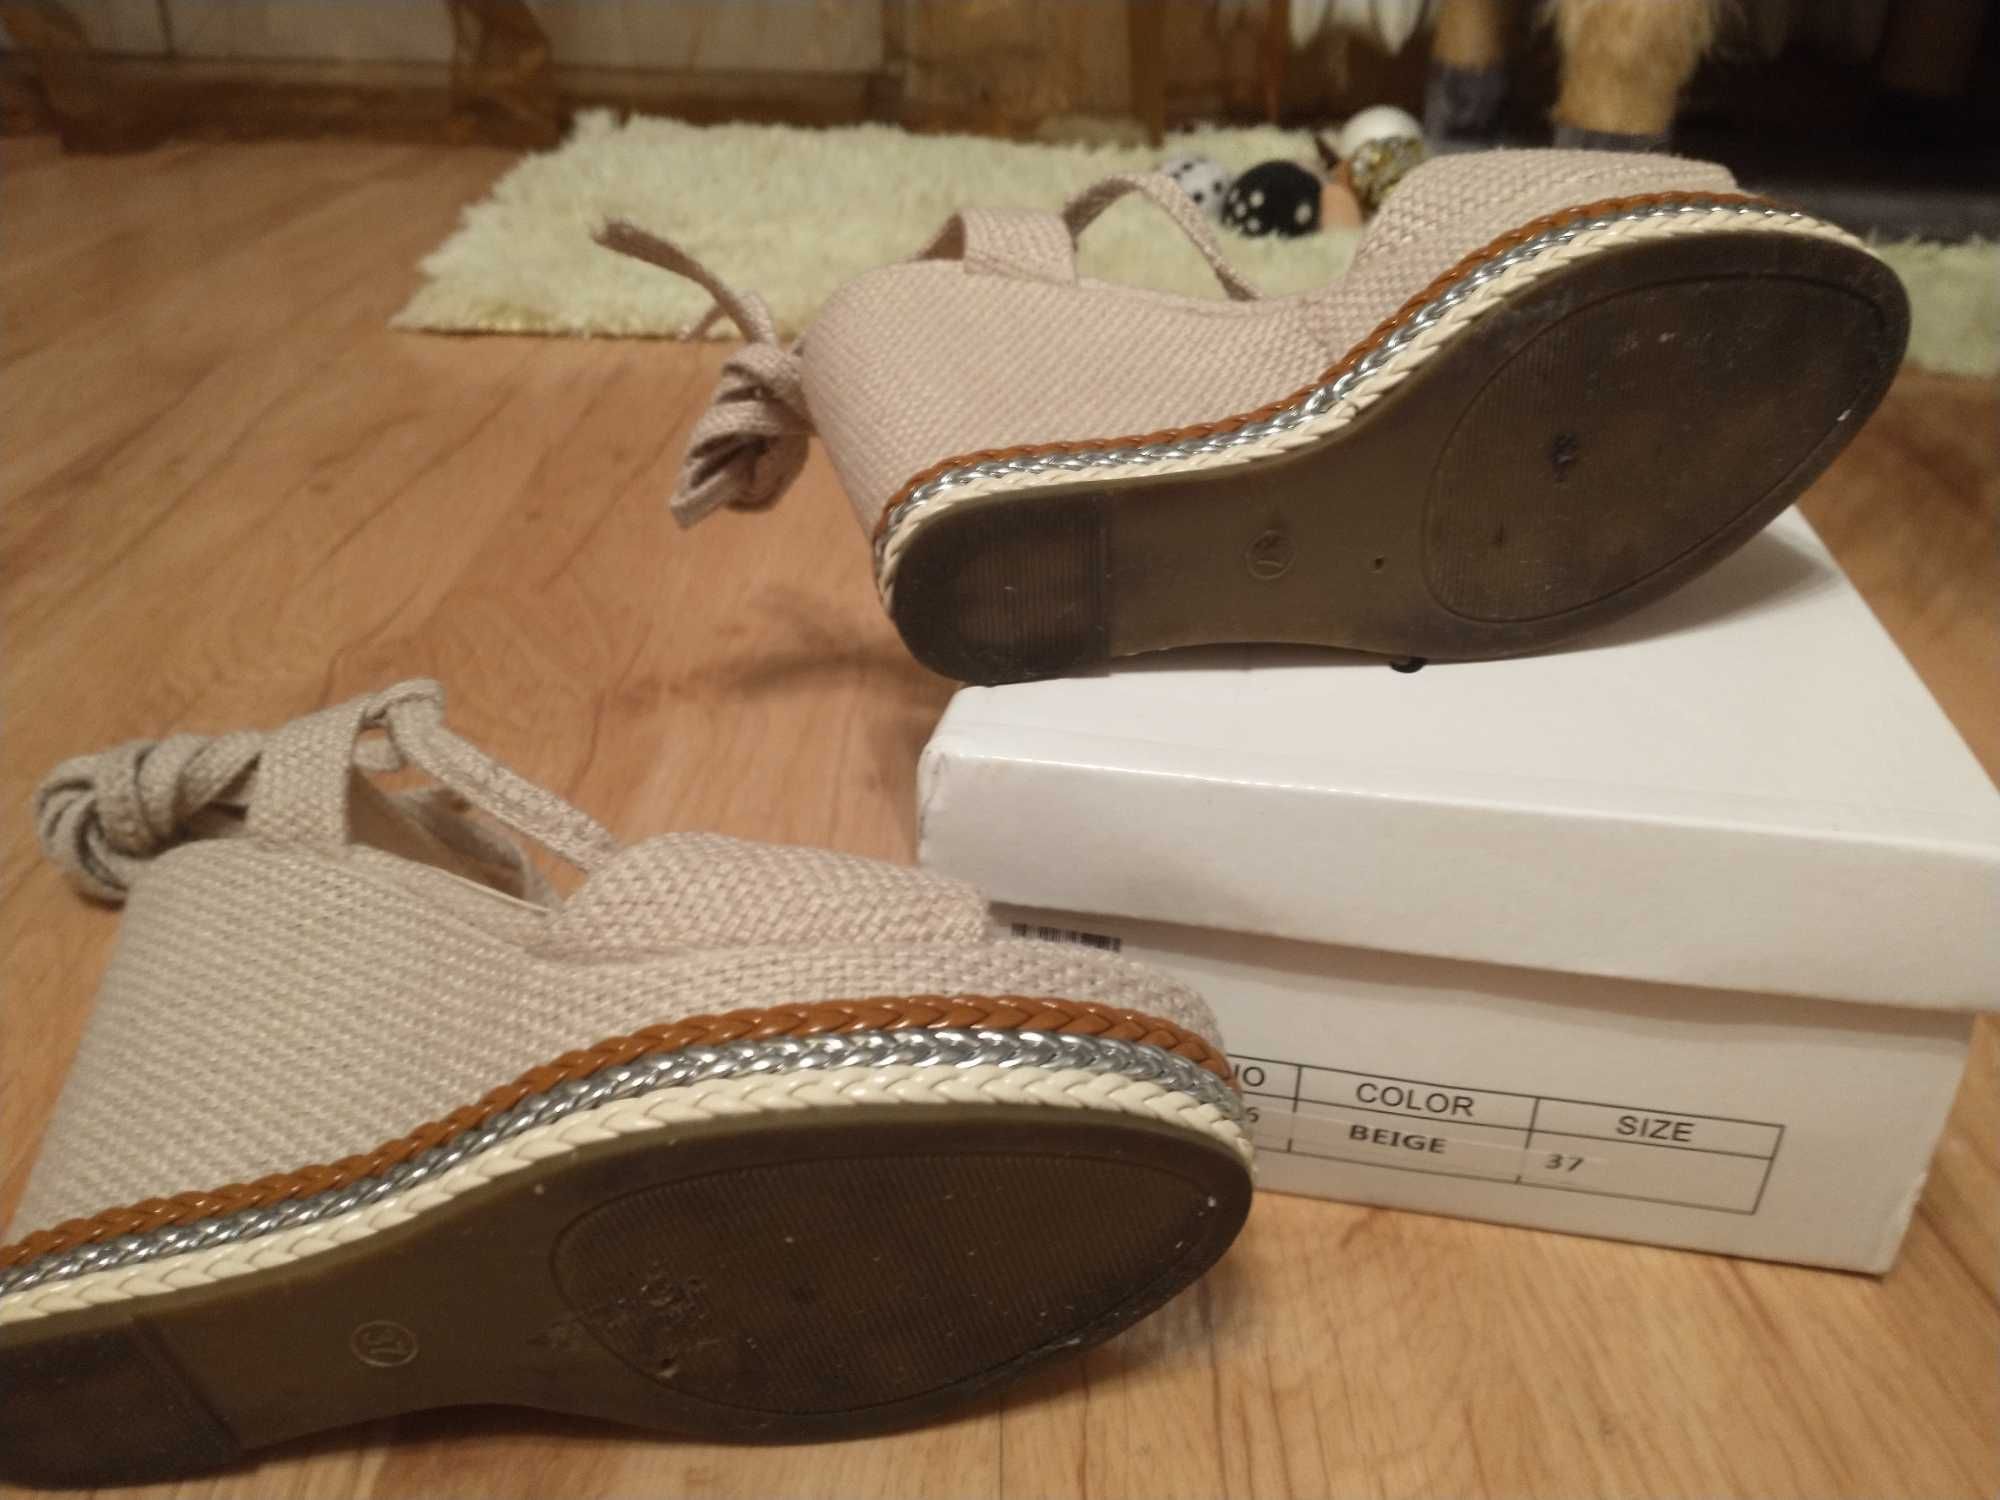 Espadryle koturny sandały damskie beżowe wiązane w kostce Mulanka 37